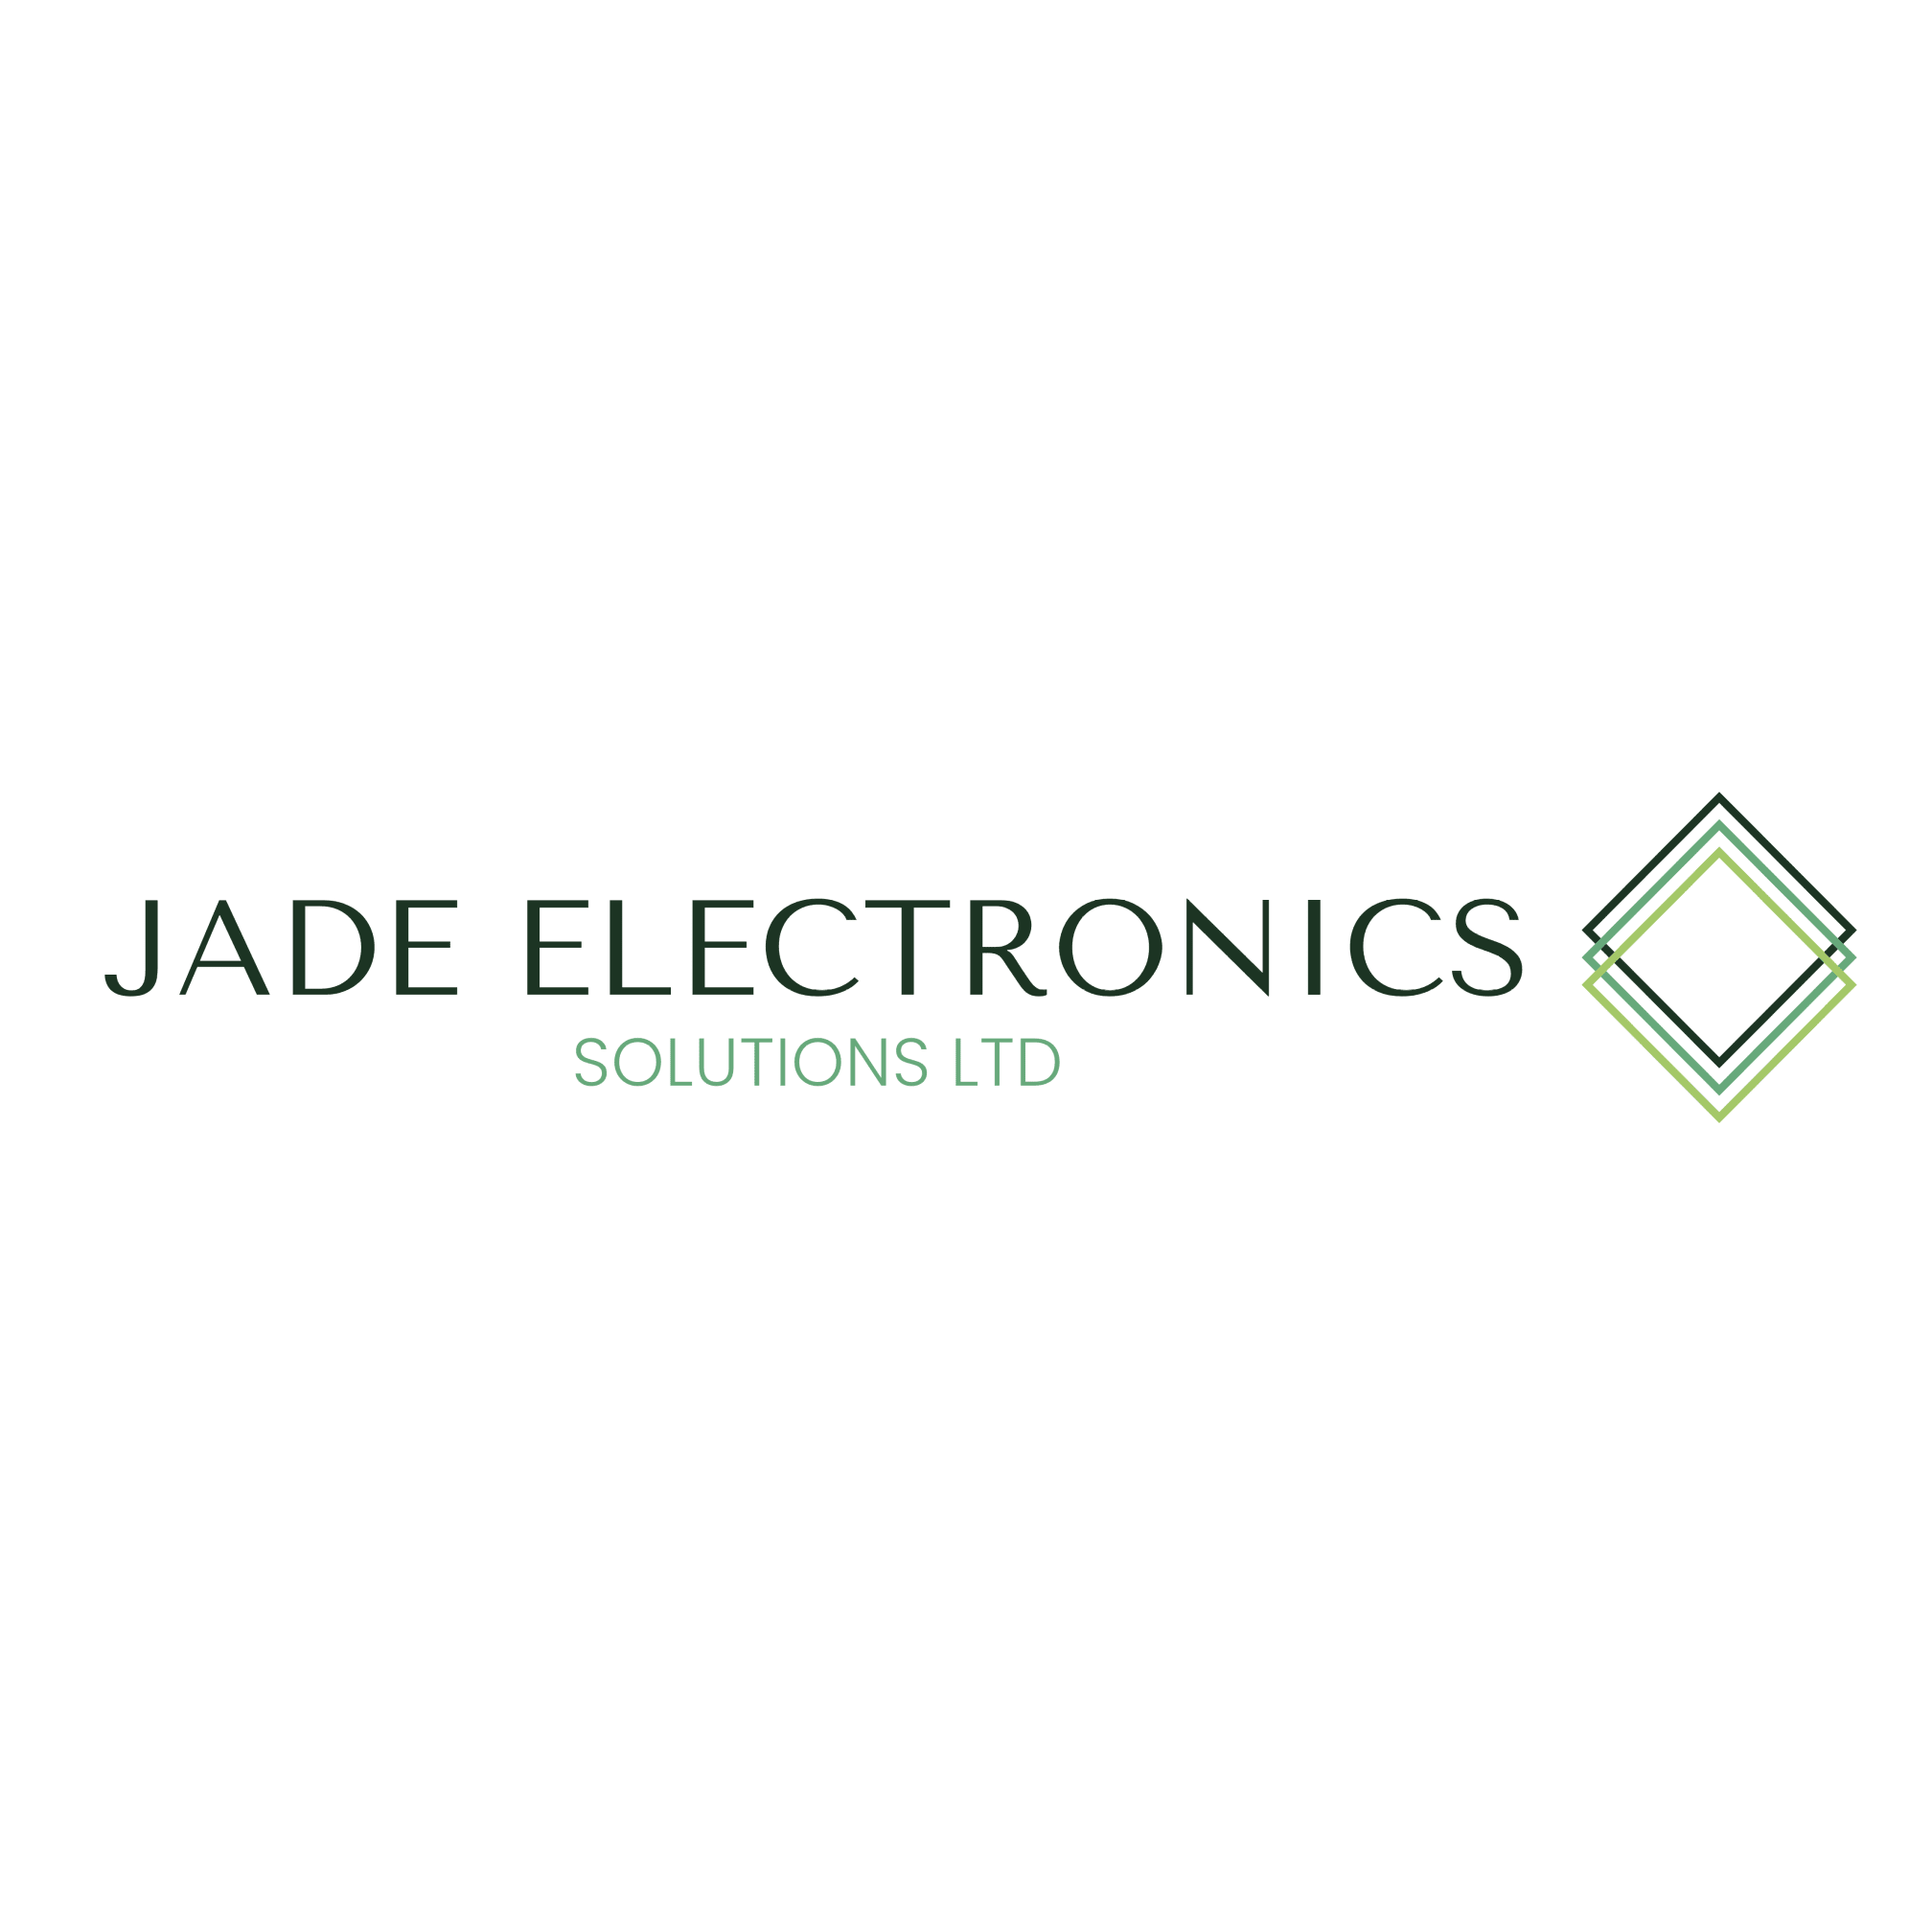 Jade Electronics Solutions Ltd - Exeter, Devon EX5 2QB - 07889 642915 | ShowMeLocal.com